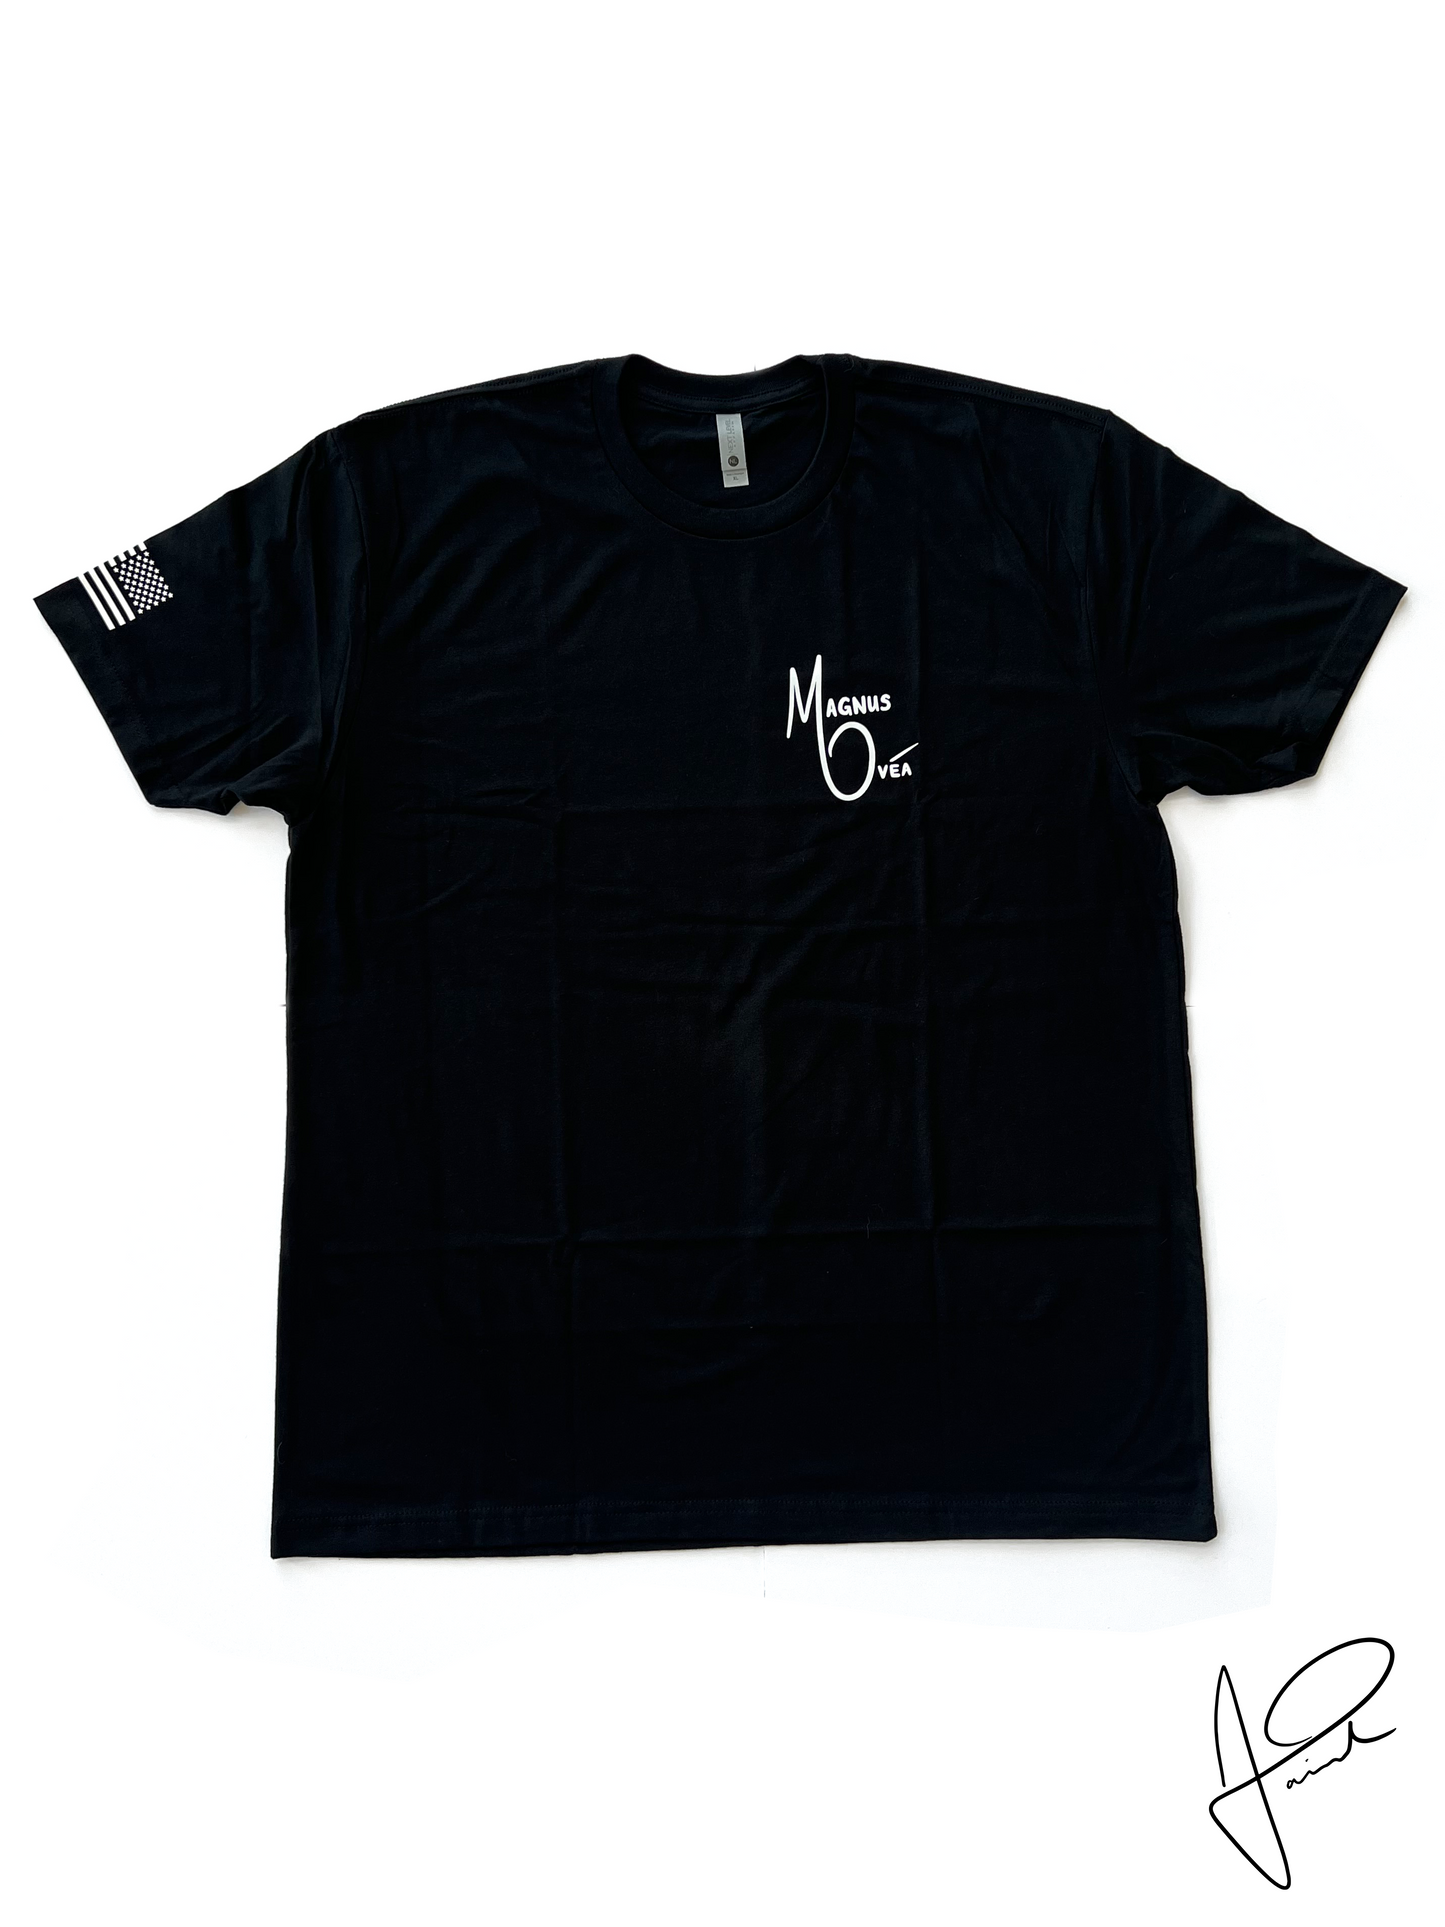 M O MAGNUS OVĒA - Left Chest Shirt